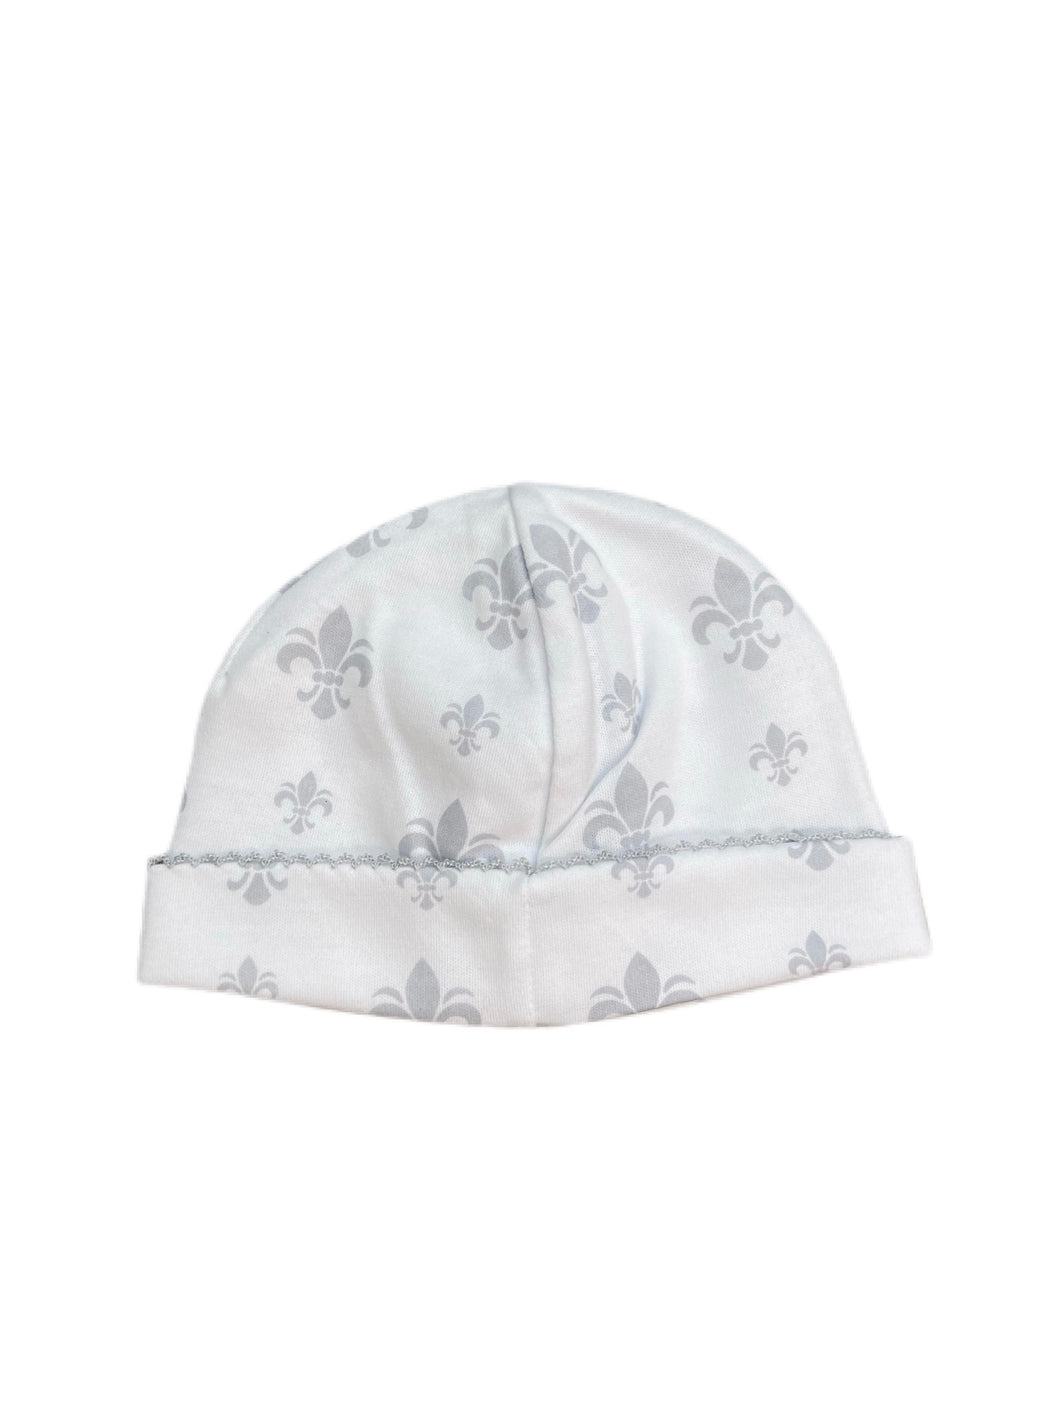 BAM Fleur De Lis Classic Hat